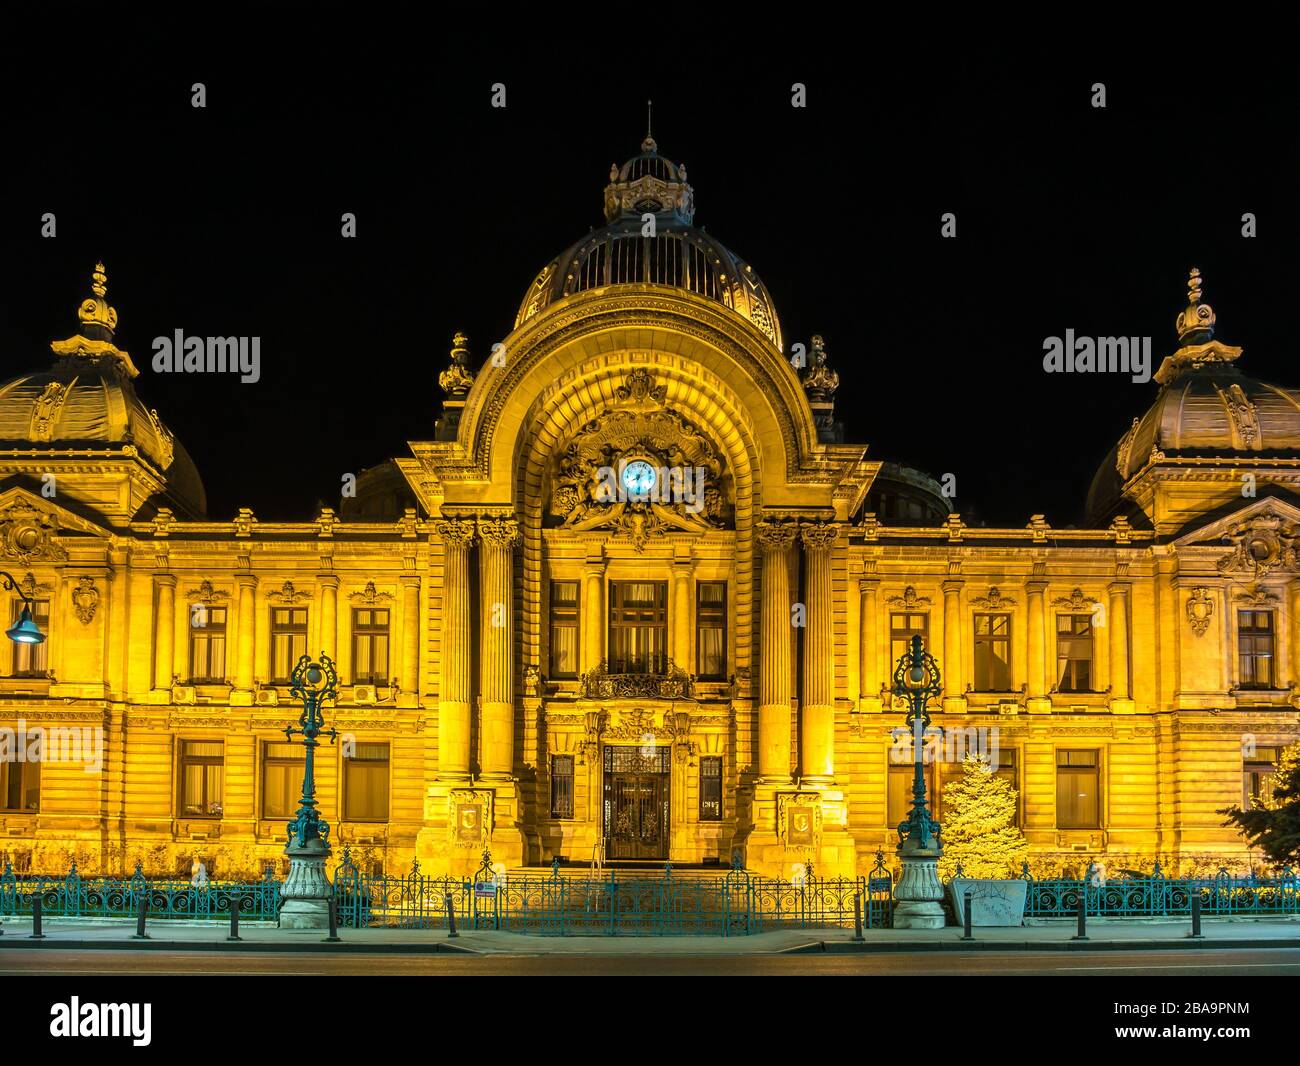 Bucarest/Rumania – 03.21.2020: Edificio del Palacio de los depósitos y remesas (CCA) por la noche. Arquitectura de un famoso edificio en Bucarest. Foto de stock